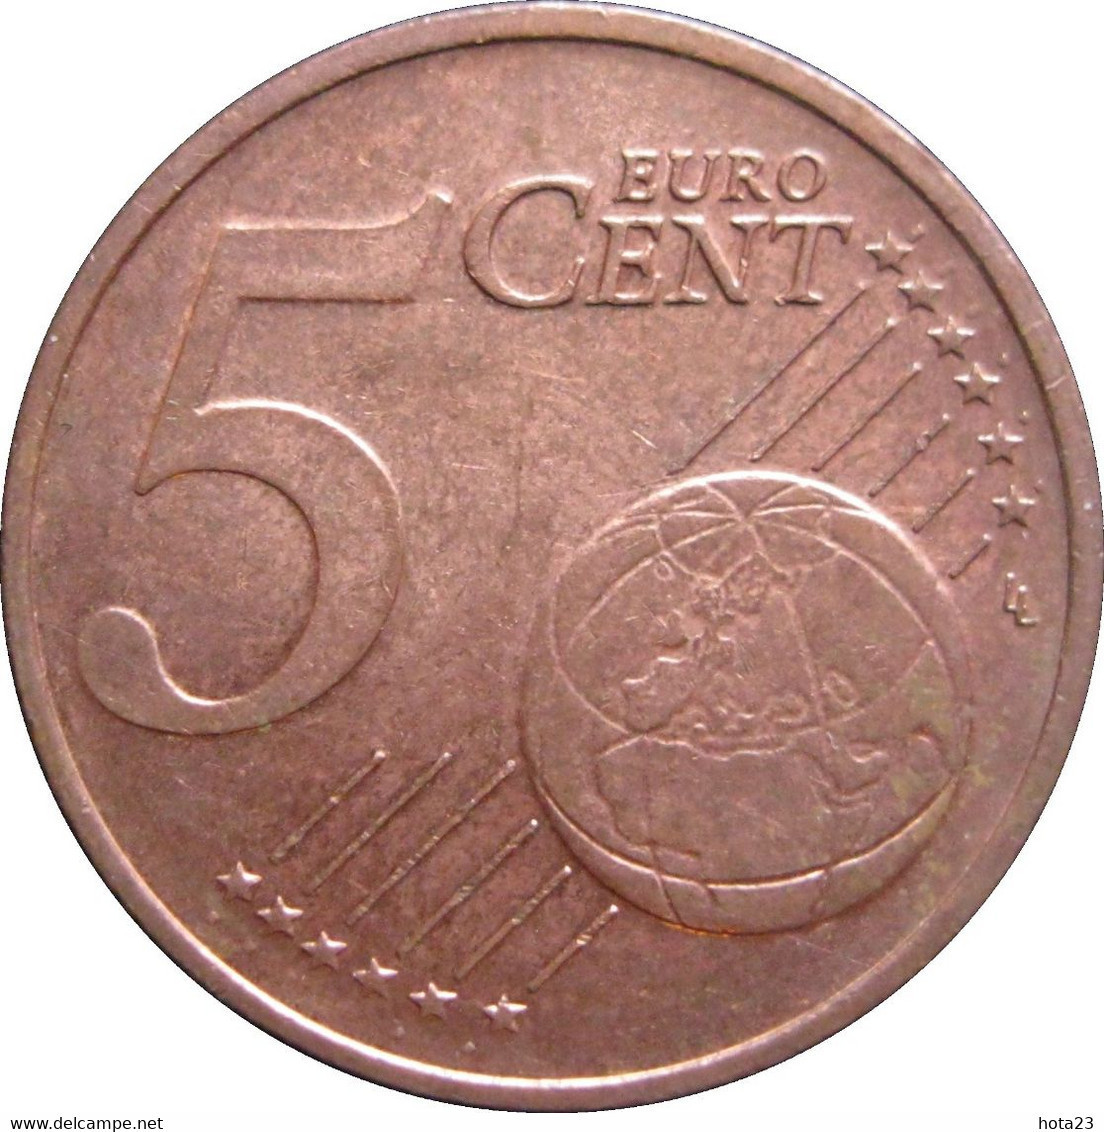 Cyprus : CHYPRE 5  EURO  Cent 2011   EIRO CIRCULEET COIN - Cipro